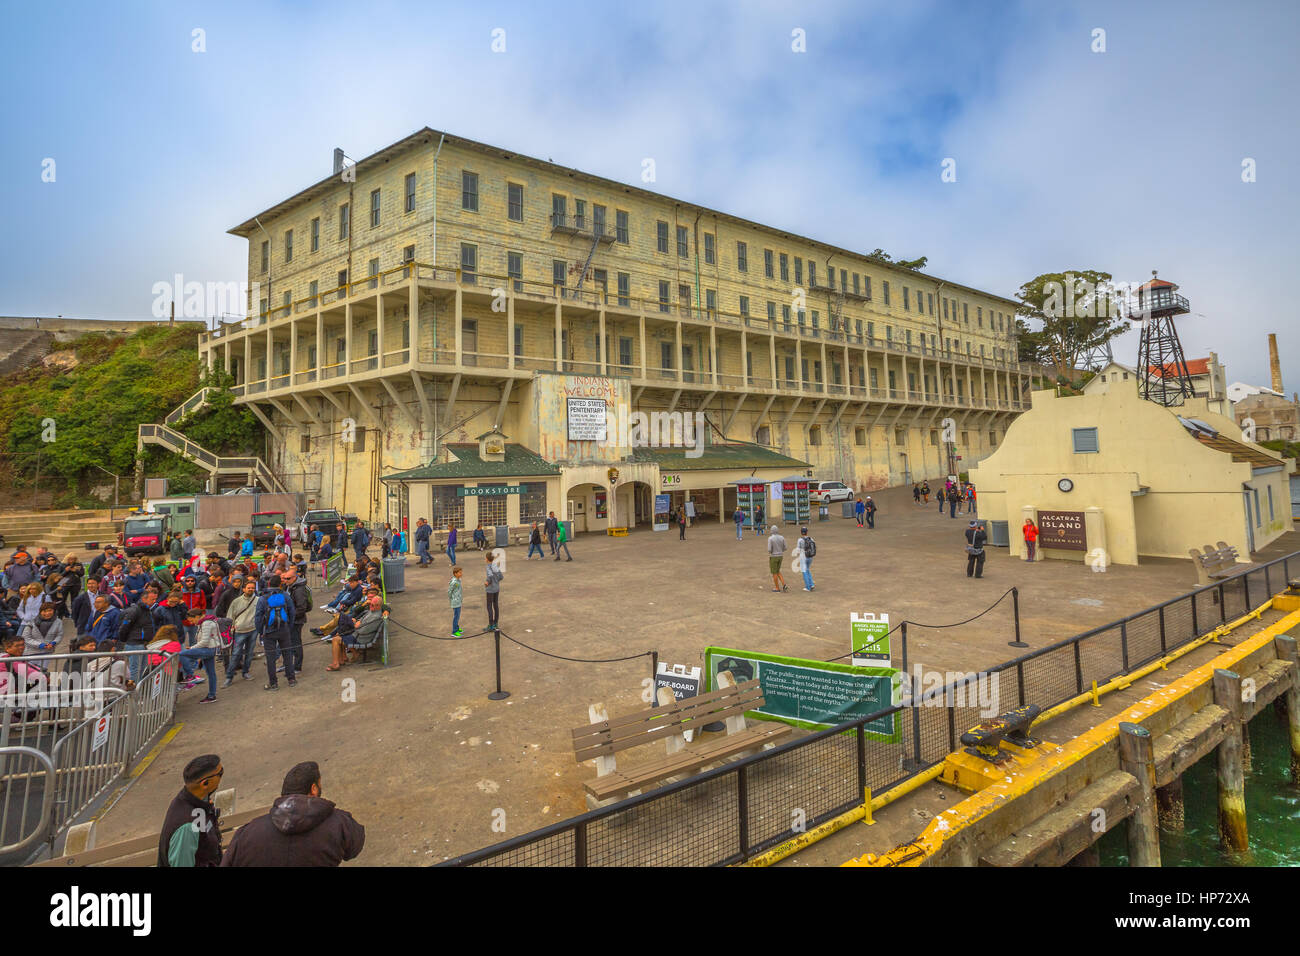 San Francisco, Estados Unidos - 14 de agosto, 2016: Panorama de hito histórico de la prisión de alcatraz con officer's club, torre de agua, caseta de vigilancia, guardia t Foto de stock